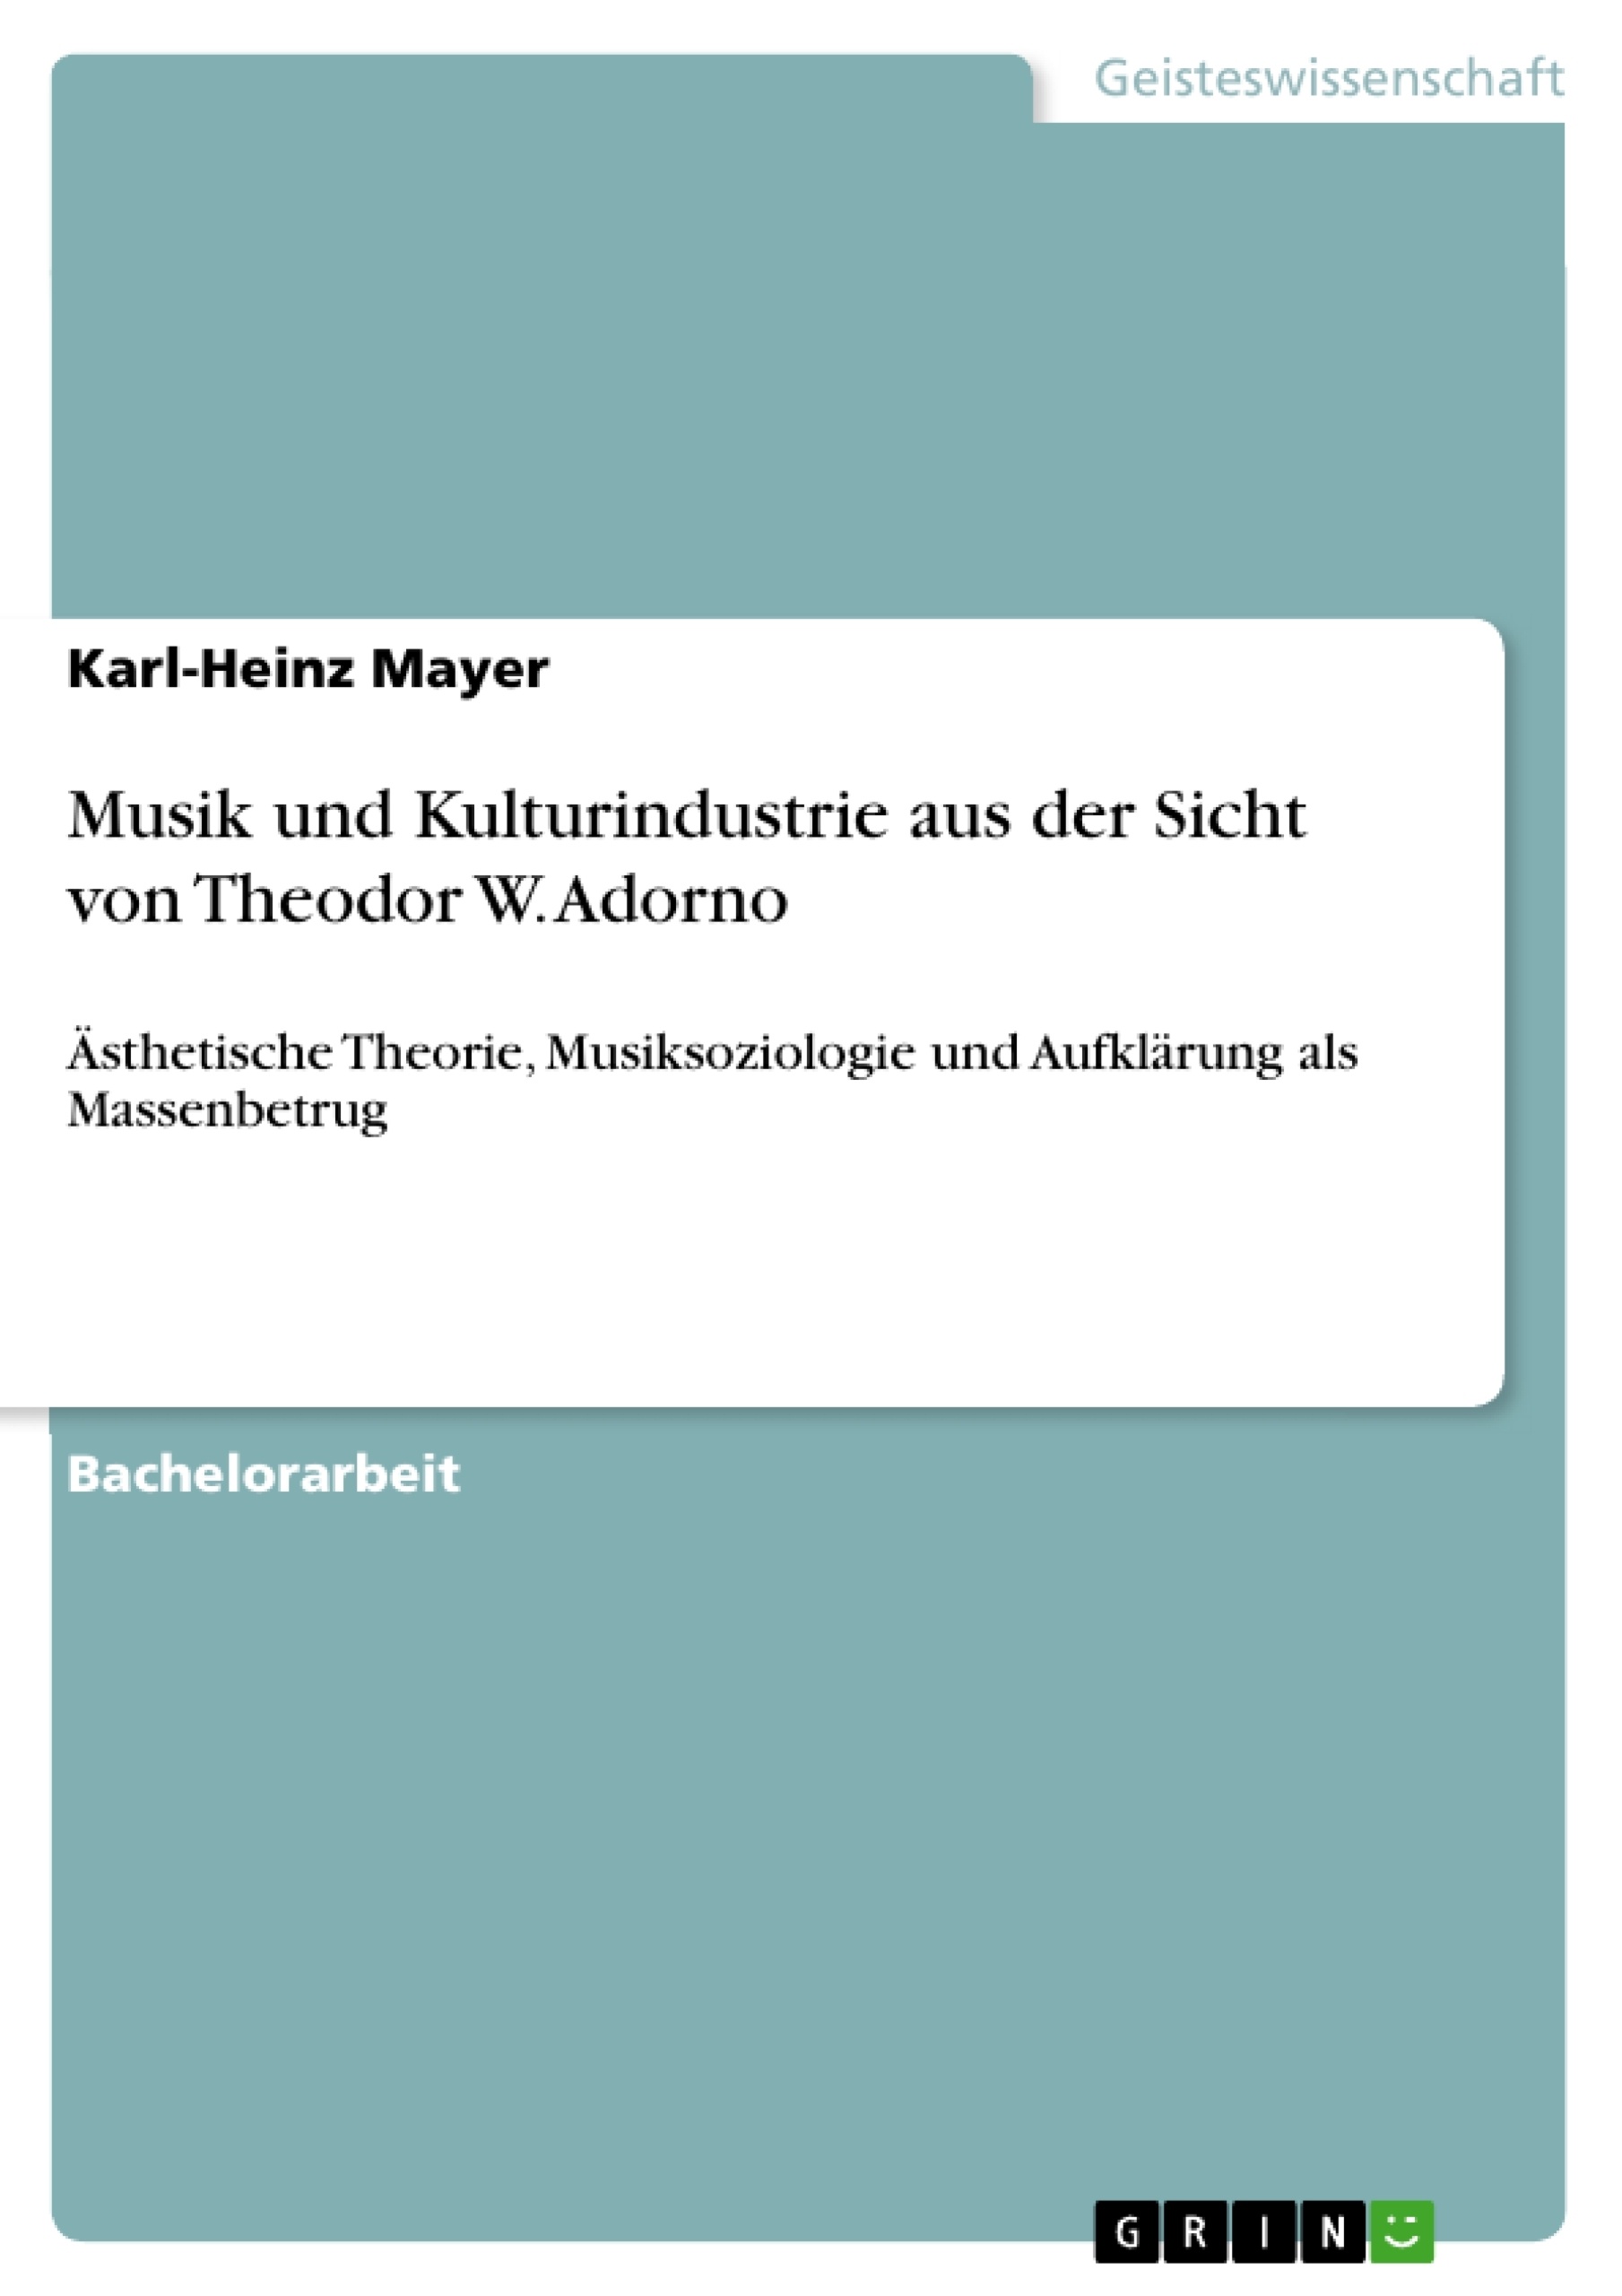 Titre: Musik und Kulturindustrie aus der Sicht von Theodor W. Adorno